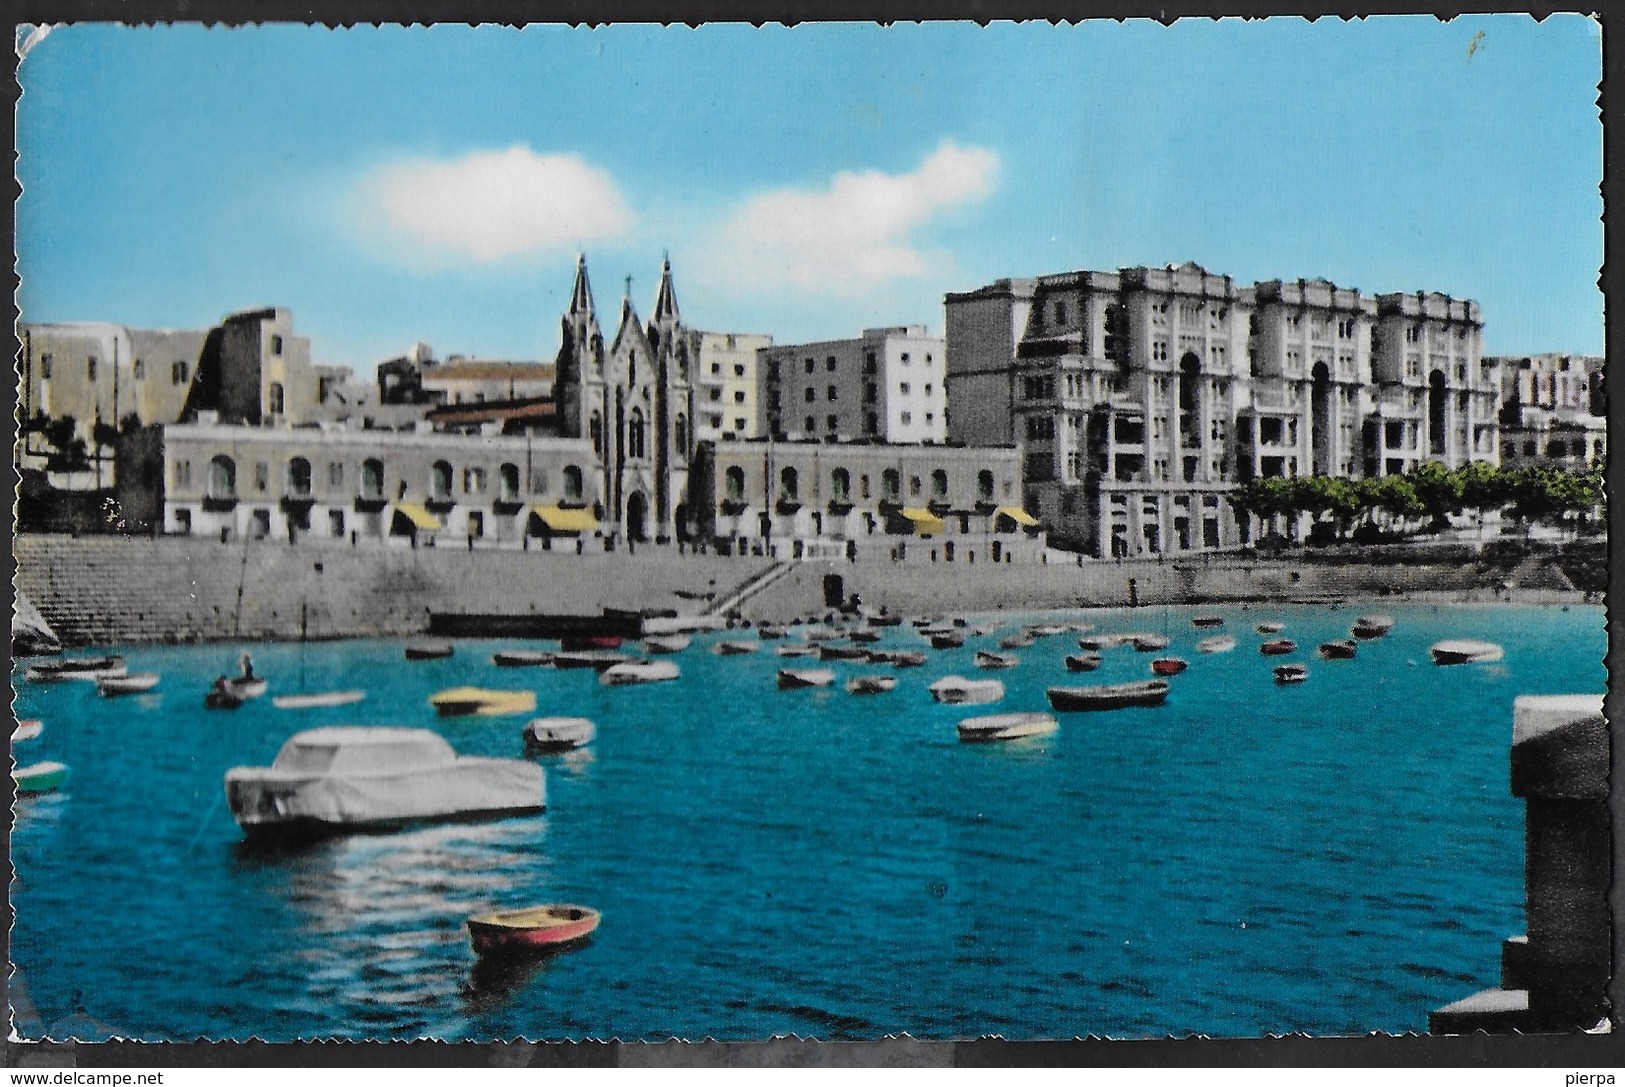 MALTA - BALLUTA BAY - ST- JULIANS - FORMATO PICCOLO - VIAGGIATA 1960 FRANCOBOLLO ASPORTATO - Malta